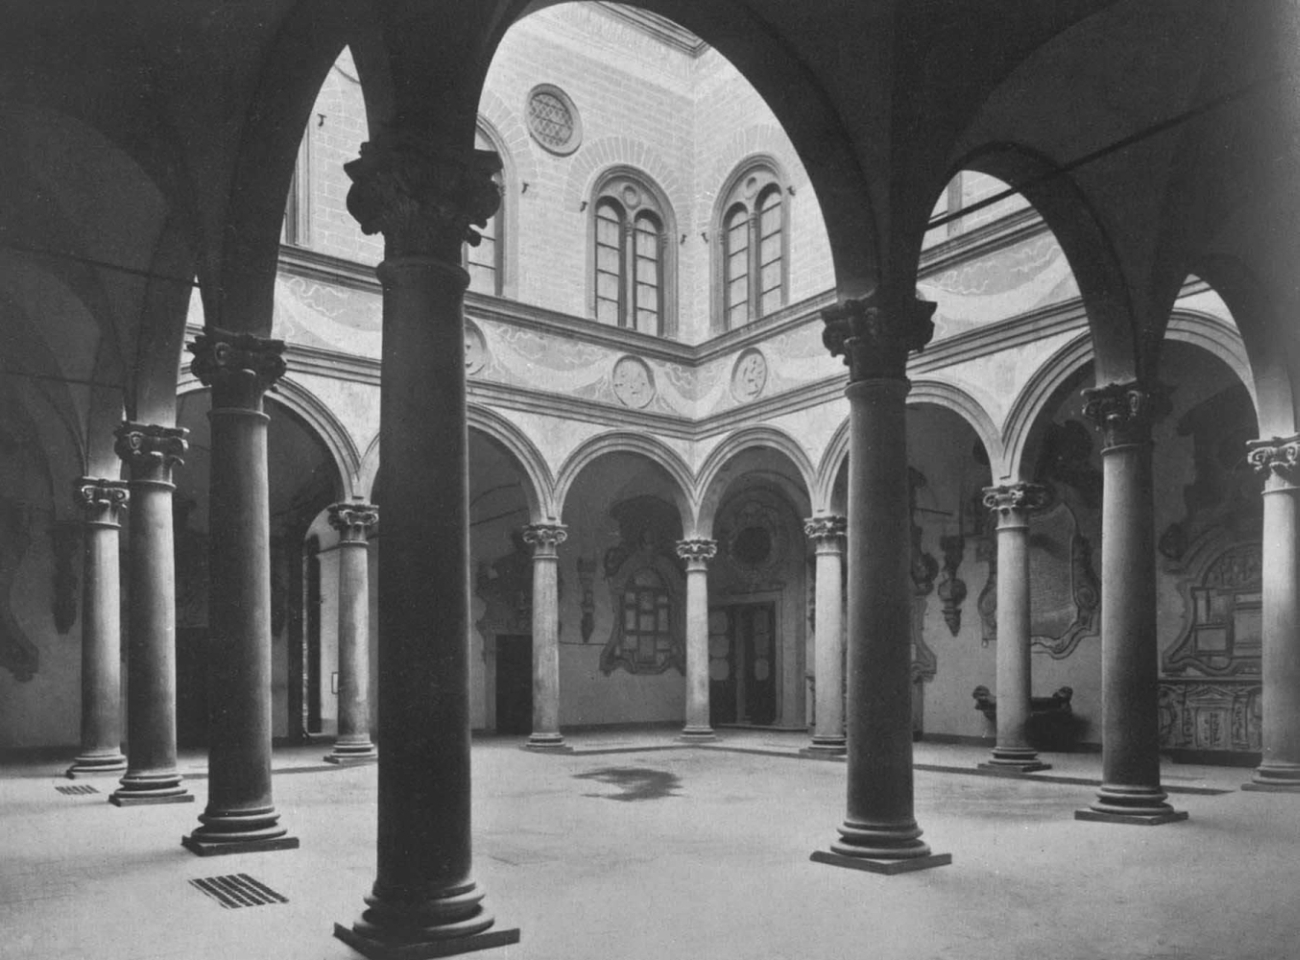 Микелоццо ди Бартоломмео. Дворец Медичи-Риккарди во Флоренции. 1444 - 1460. Внутренний двор.